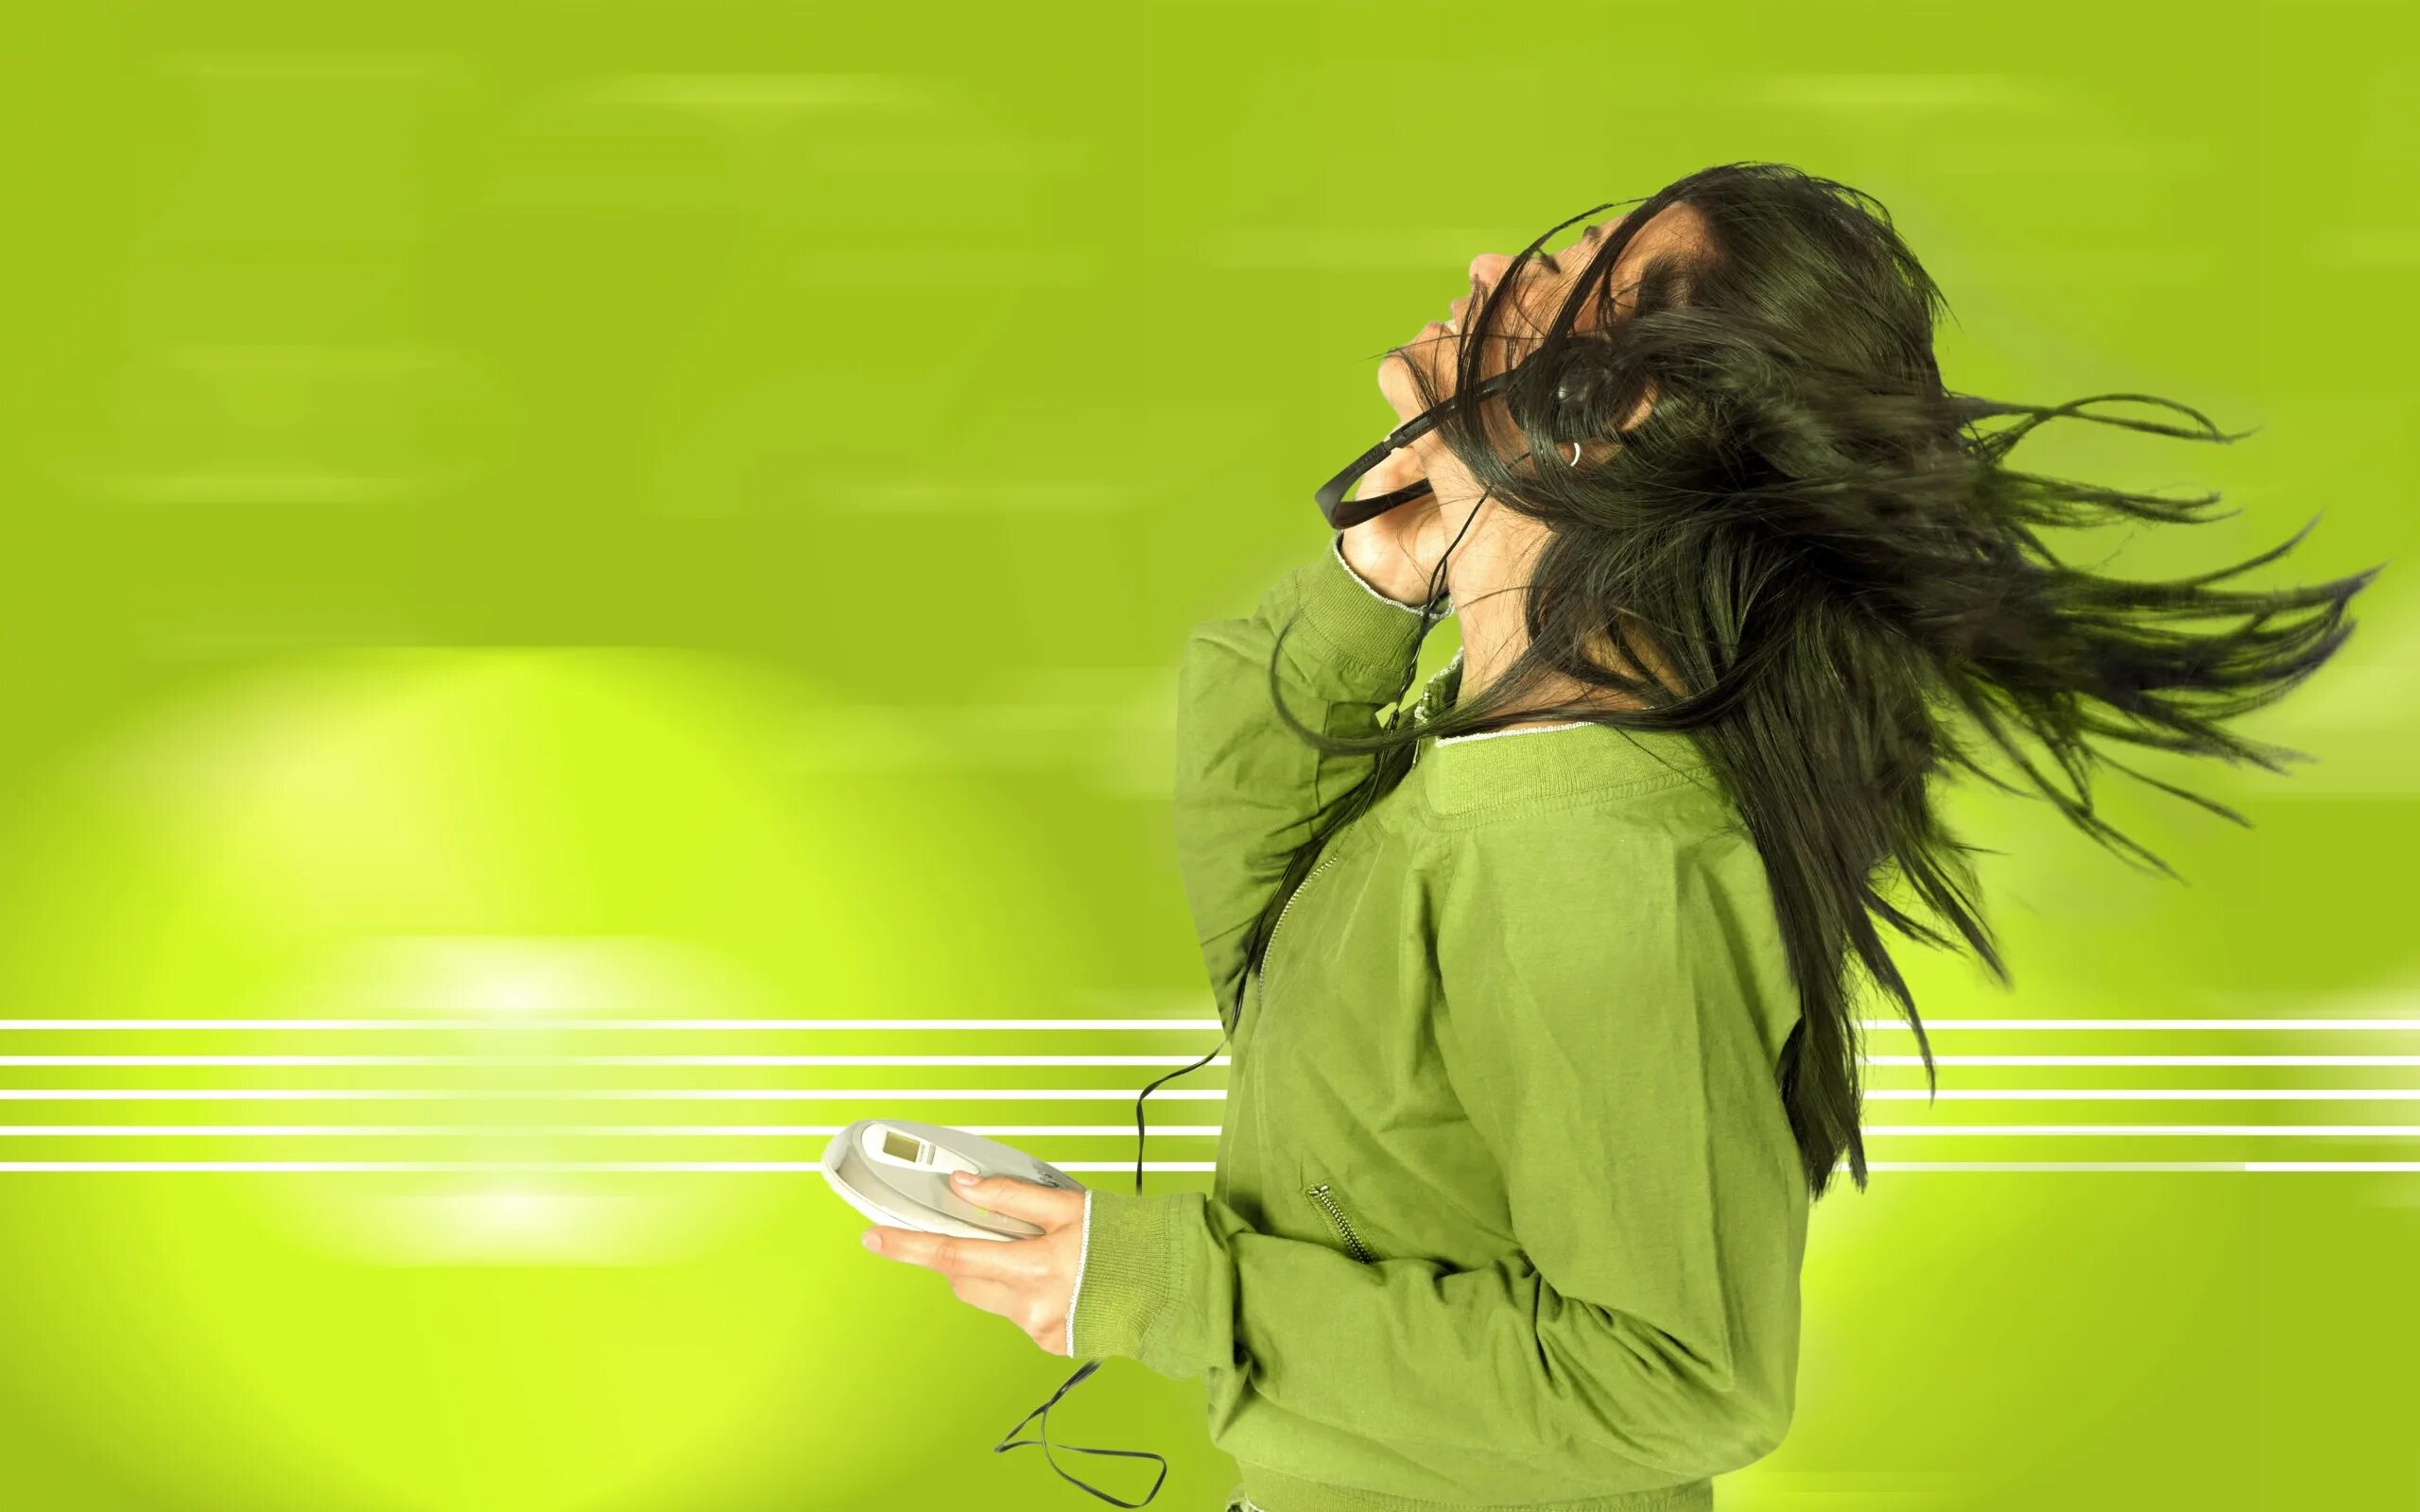 Музыка женщина дня. Девушка в наушниках танцует. Женщина на зеленом фоне. Девушка в зеленом. Обои на рабочий стол девушка в наушниках.